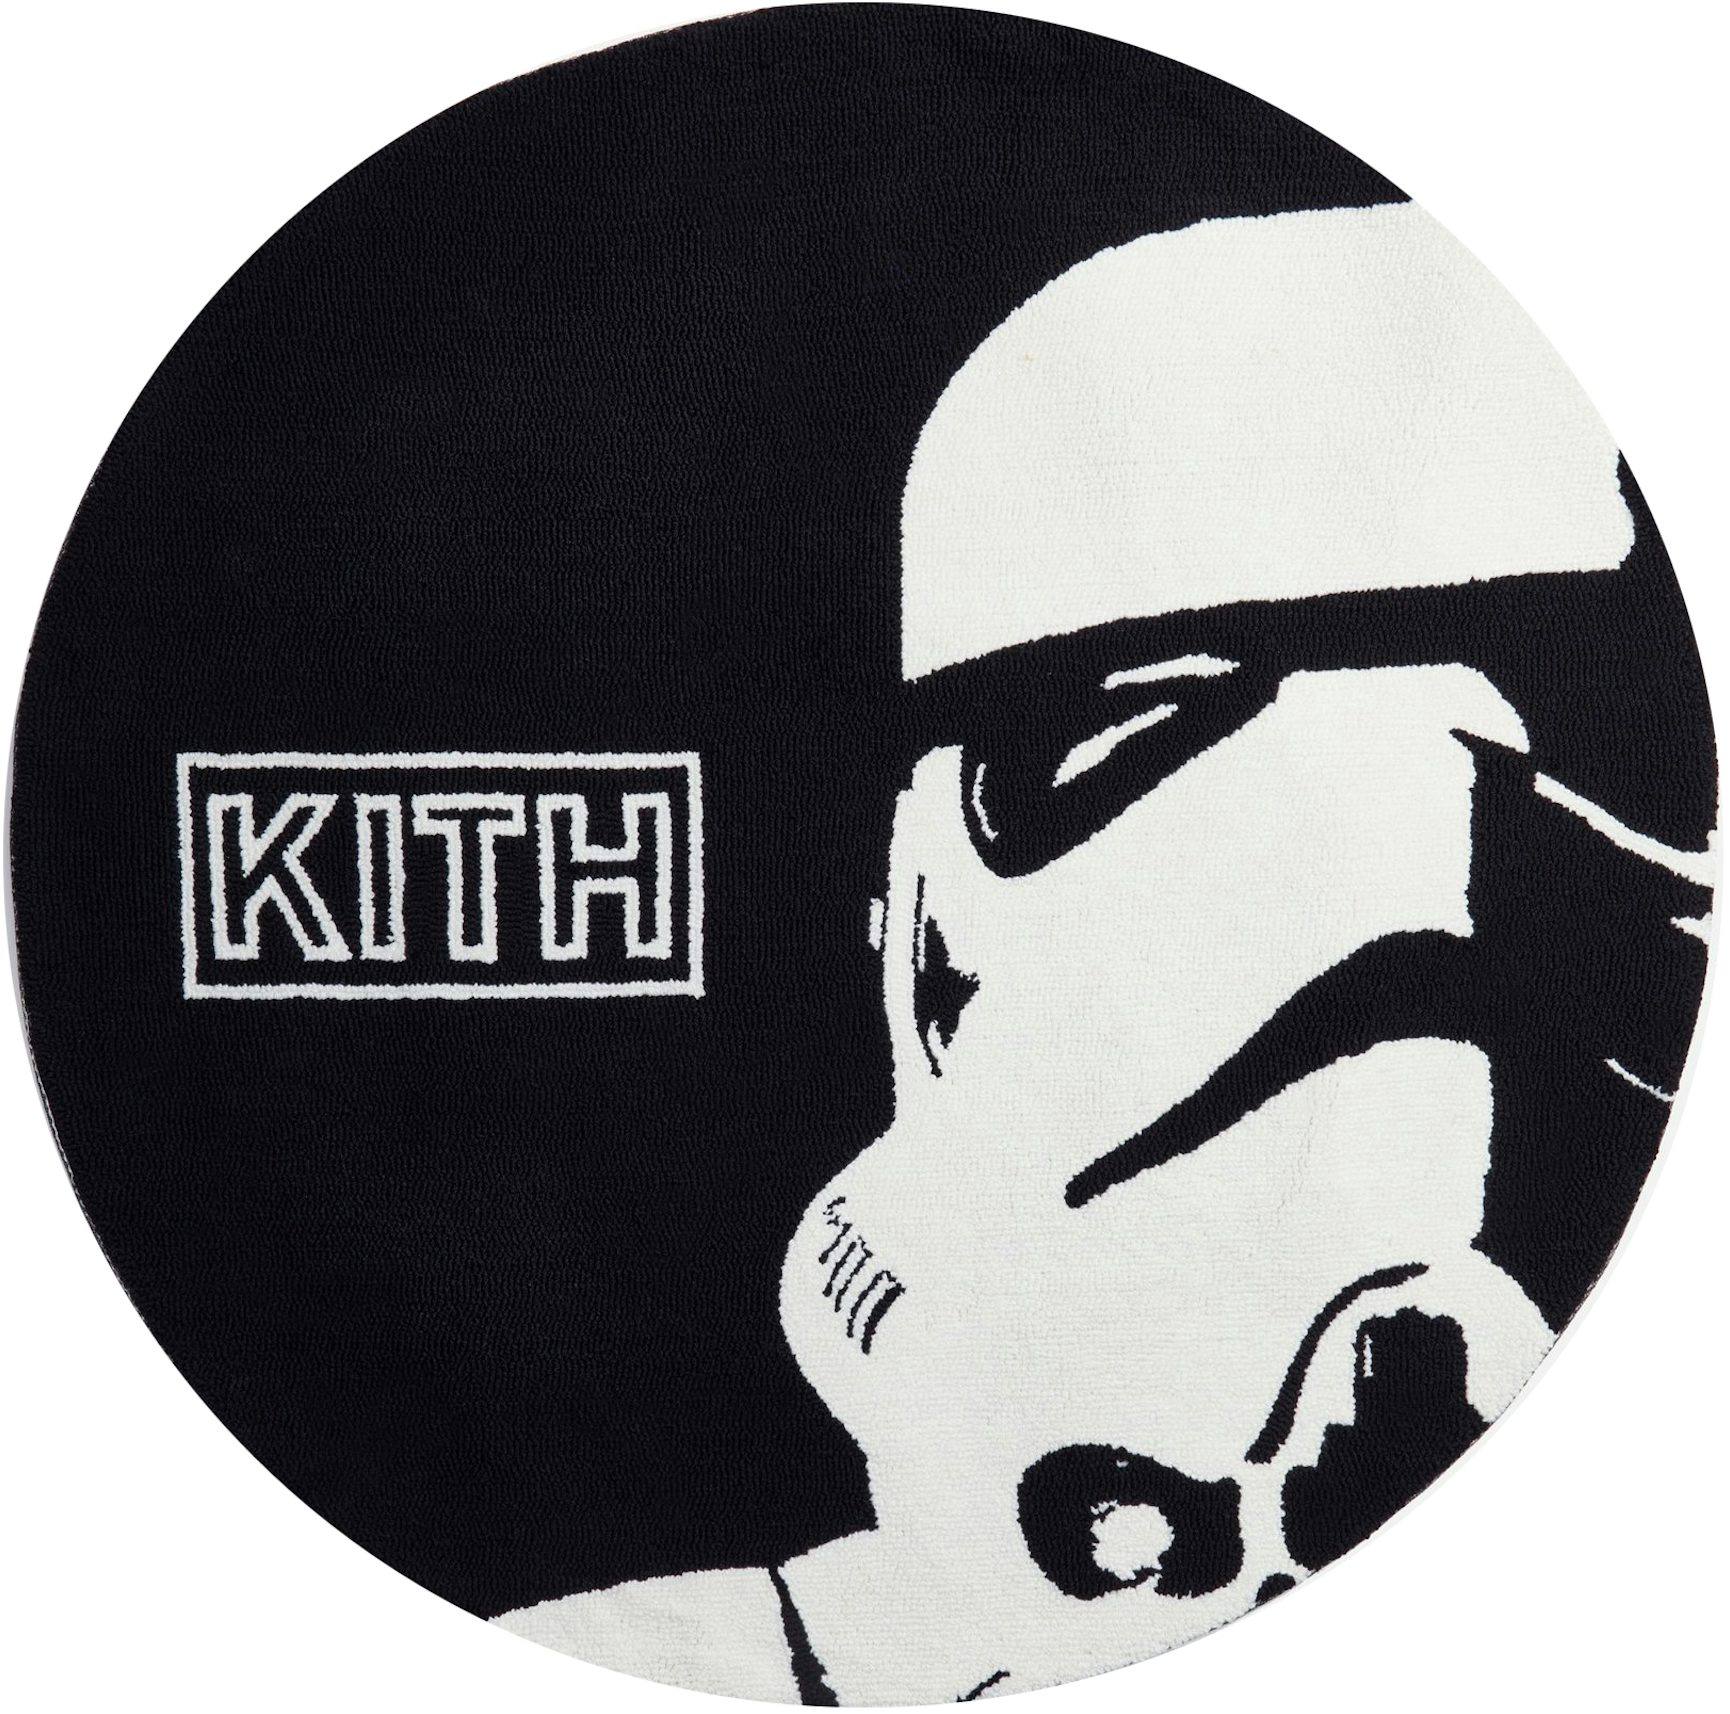 Kith x STAR WARS Darth Vader Helmet Black - FW21 - US